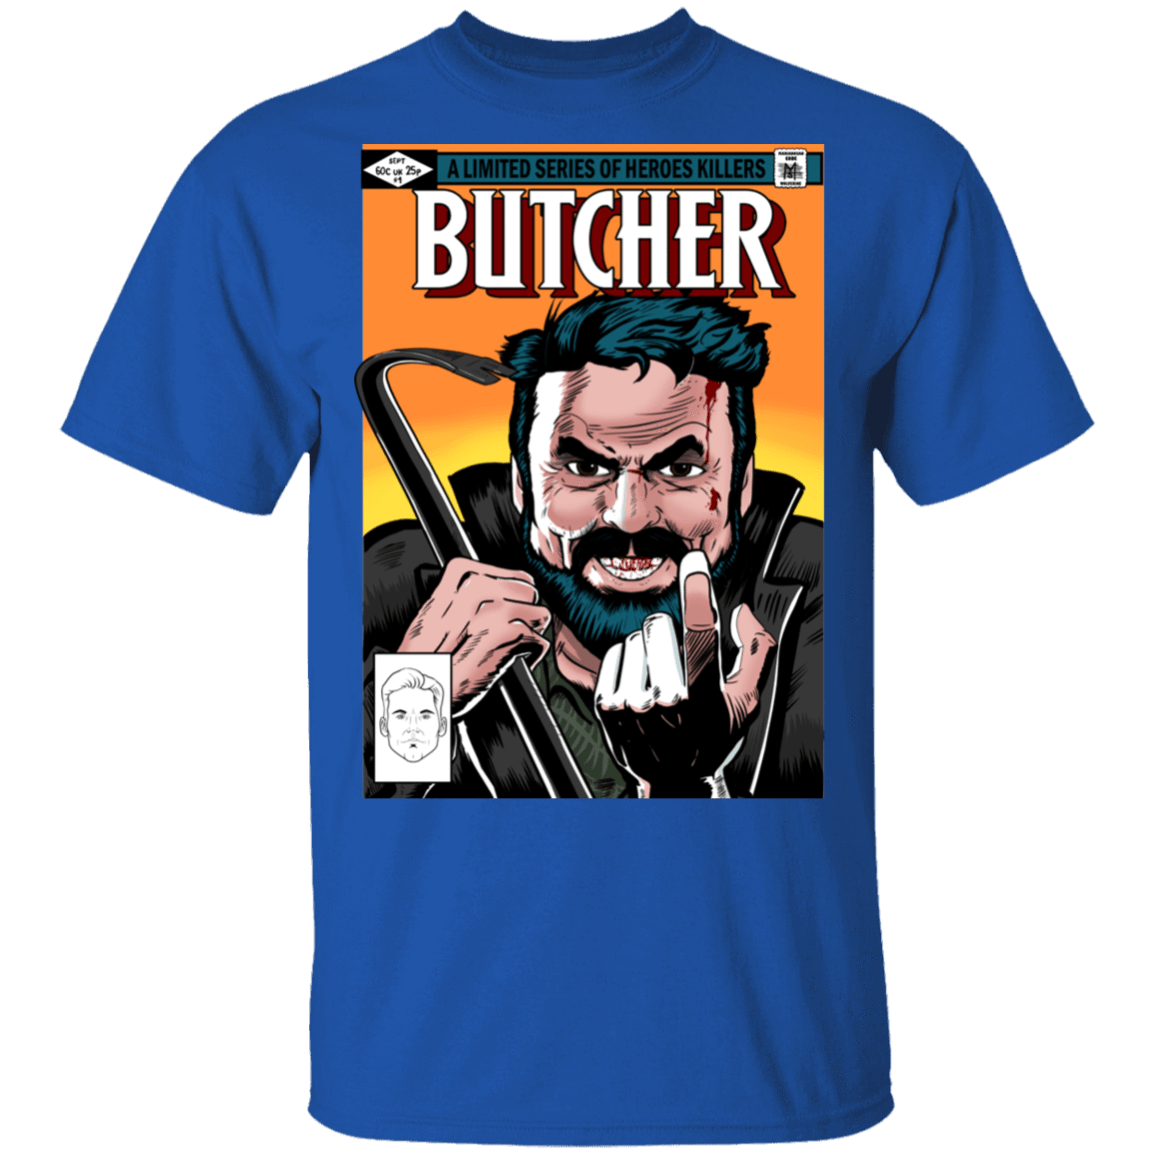 T-Shirts Royal / S The Butcher T-Shirt